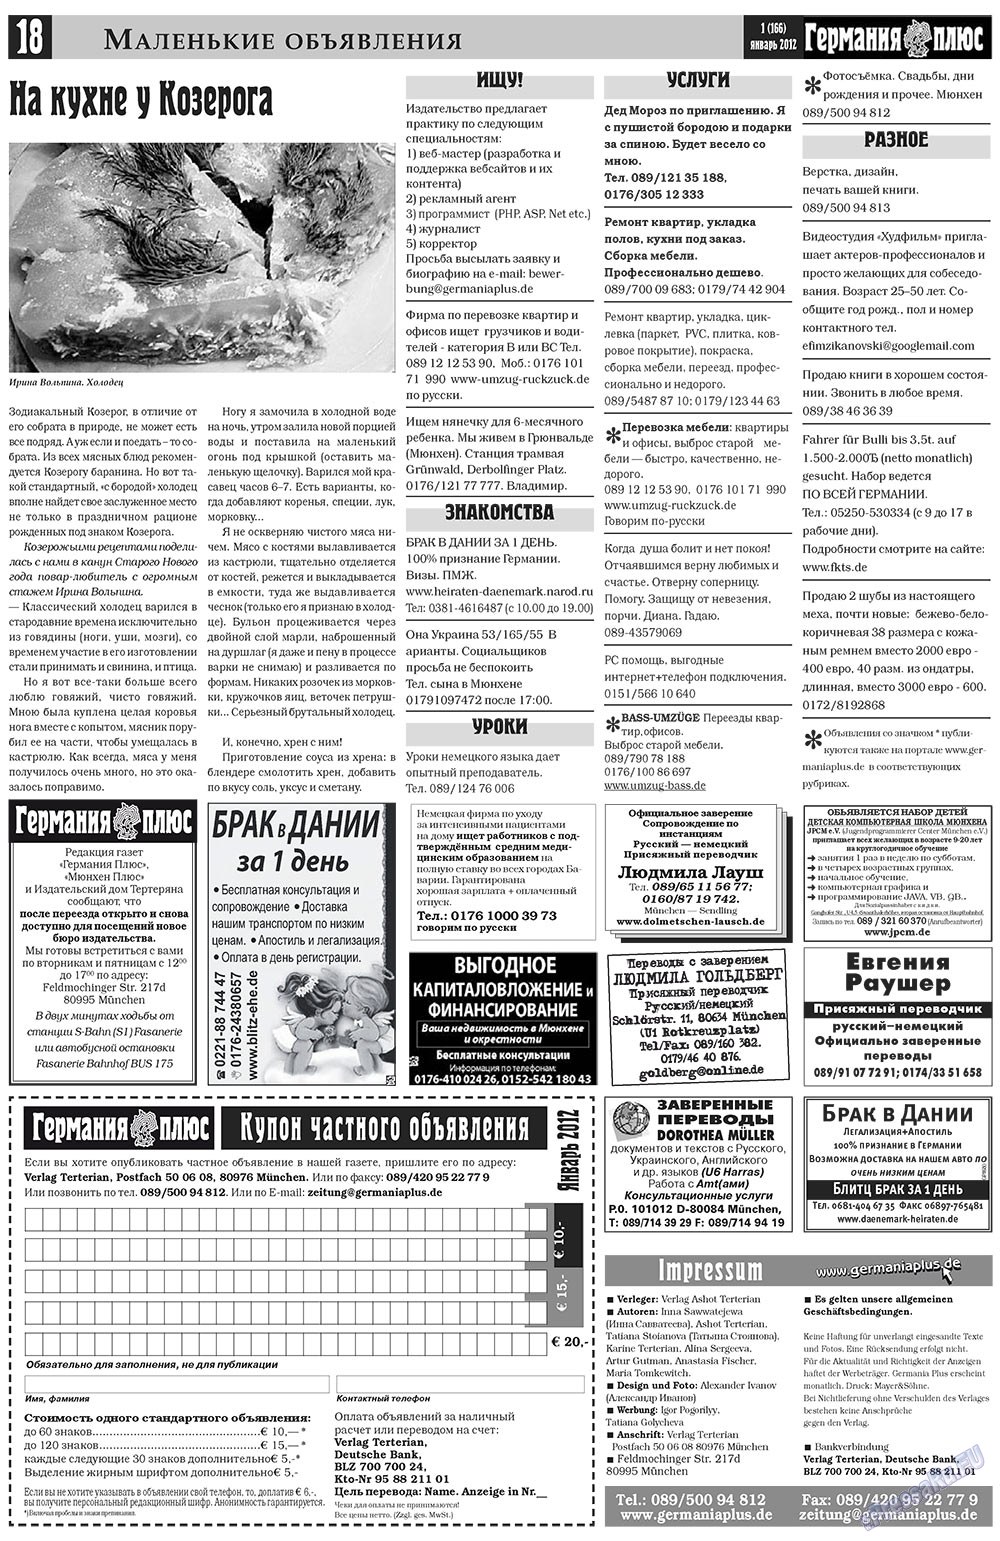 Германия плюс, газета. 2012 №1 стр.18